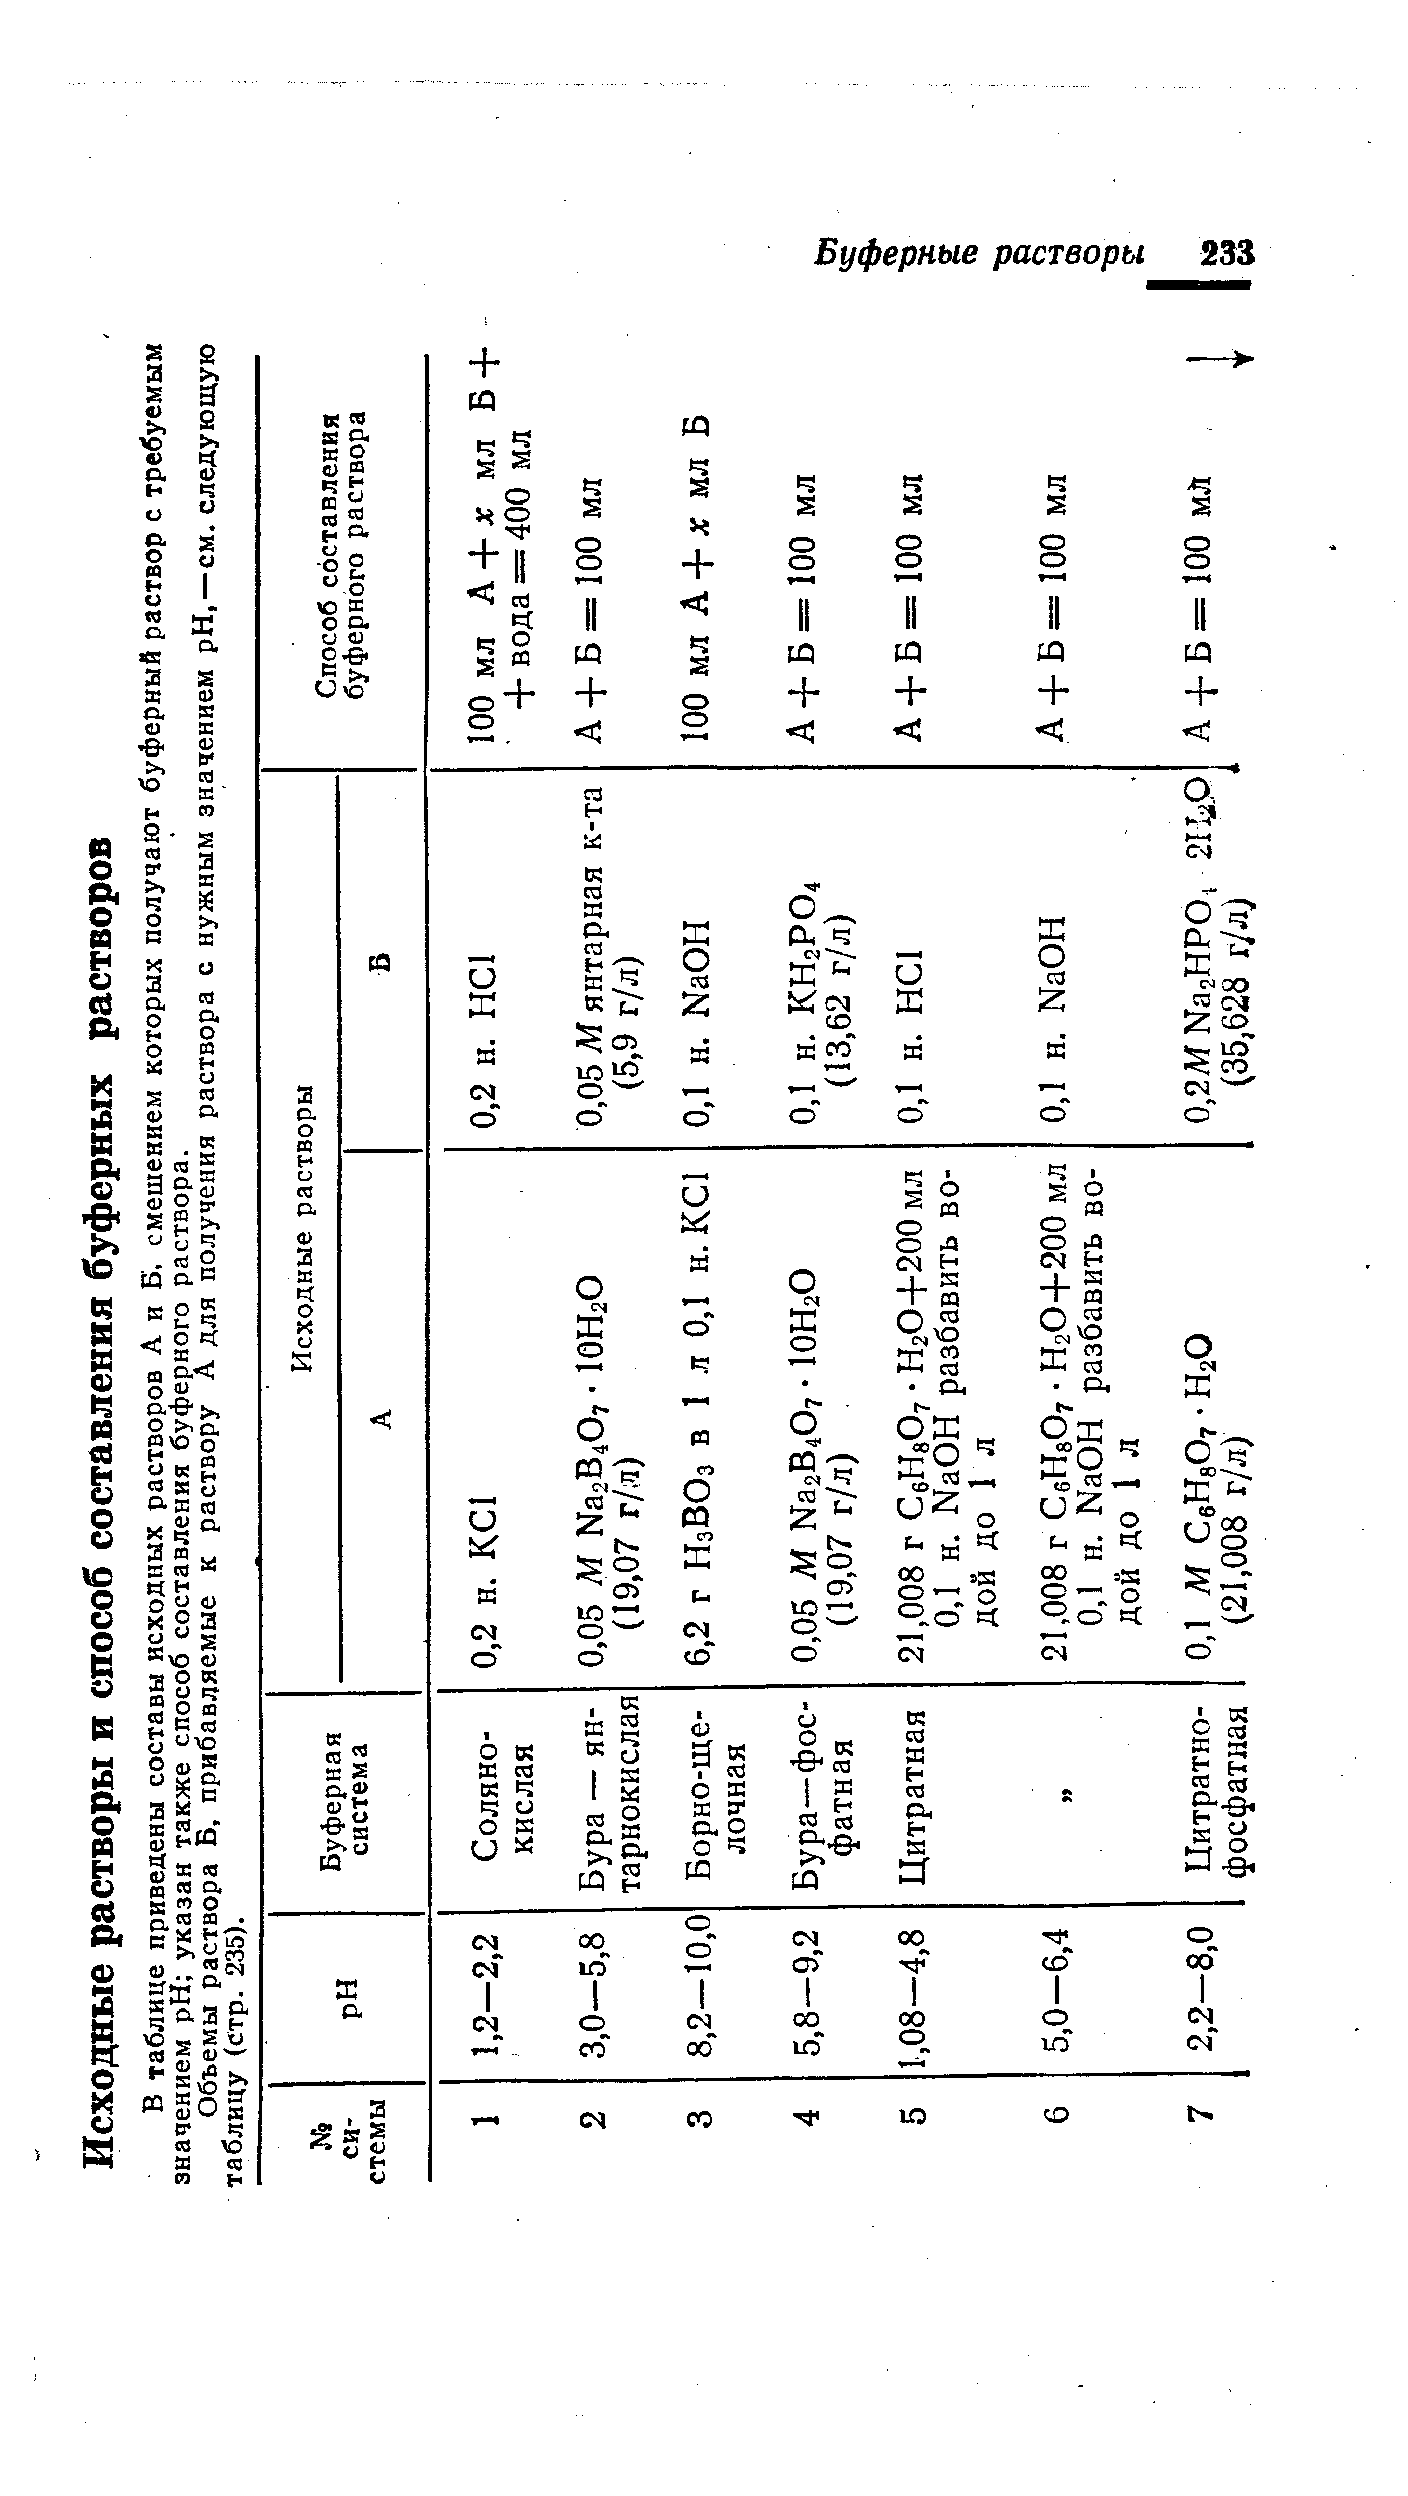 Объемы раствора Б, прибавляемые к раствору А для получения раствора с нужным значением pH,—см. следующую таблицу (стр. 235).